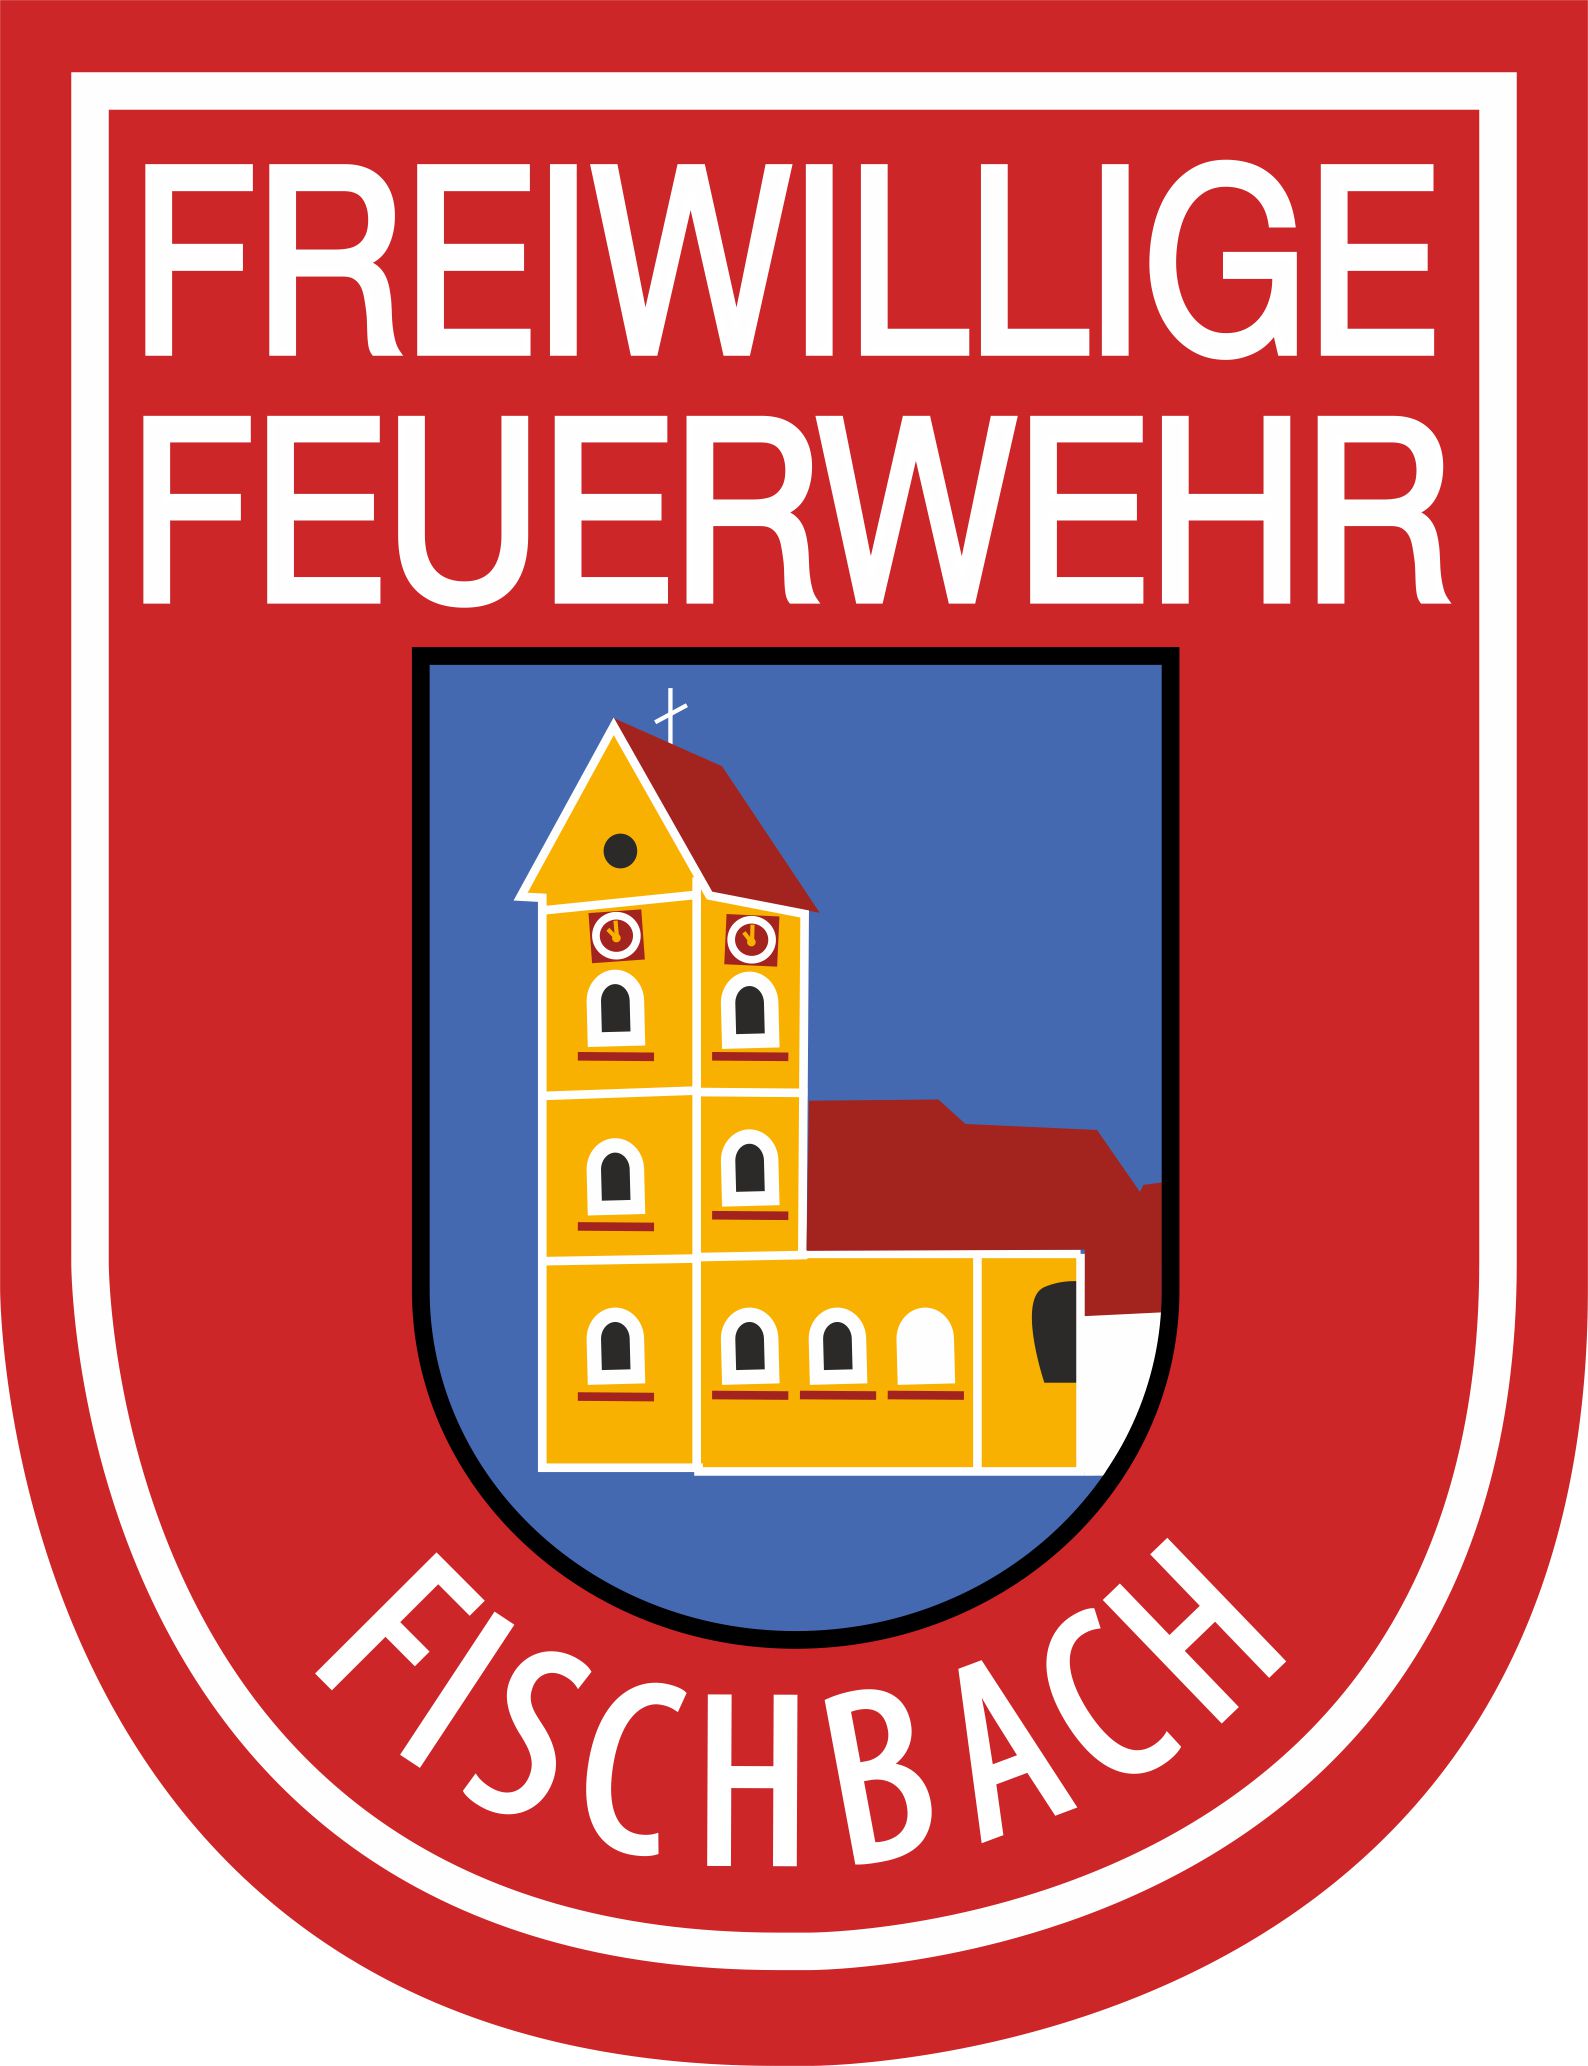 Freiwillige Feuerwehr Fischbach e. V.